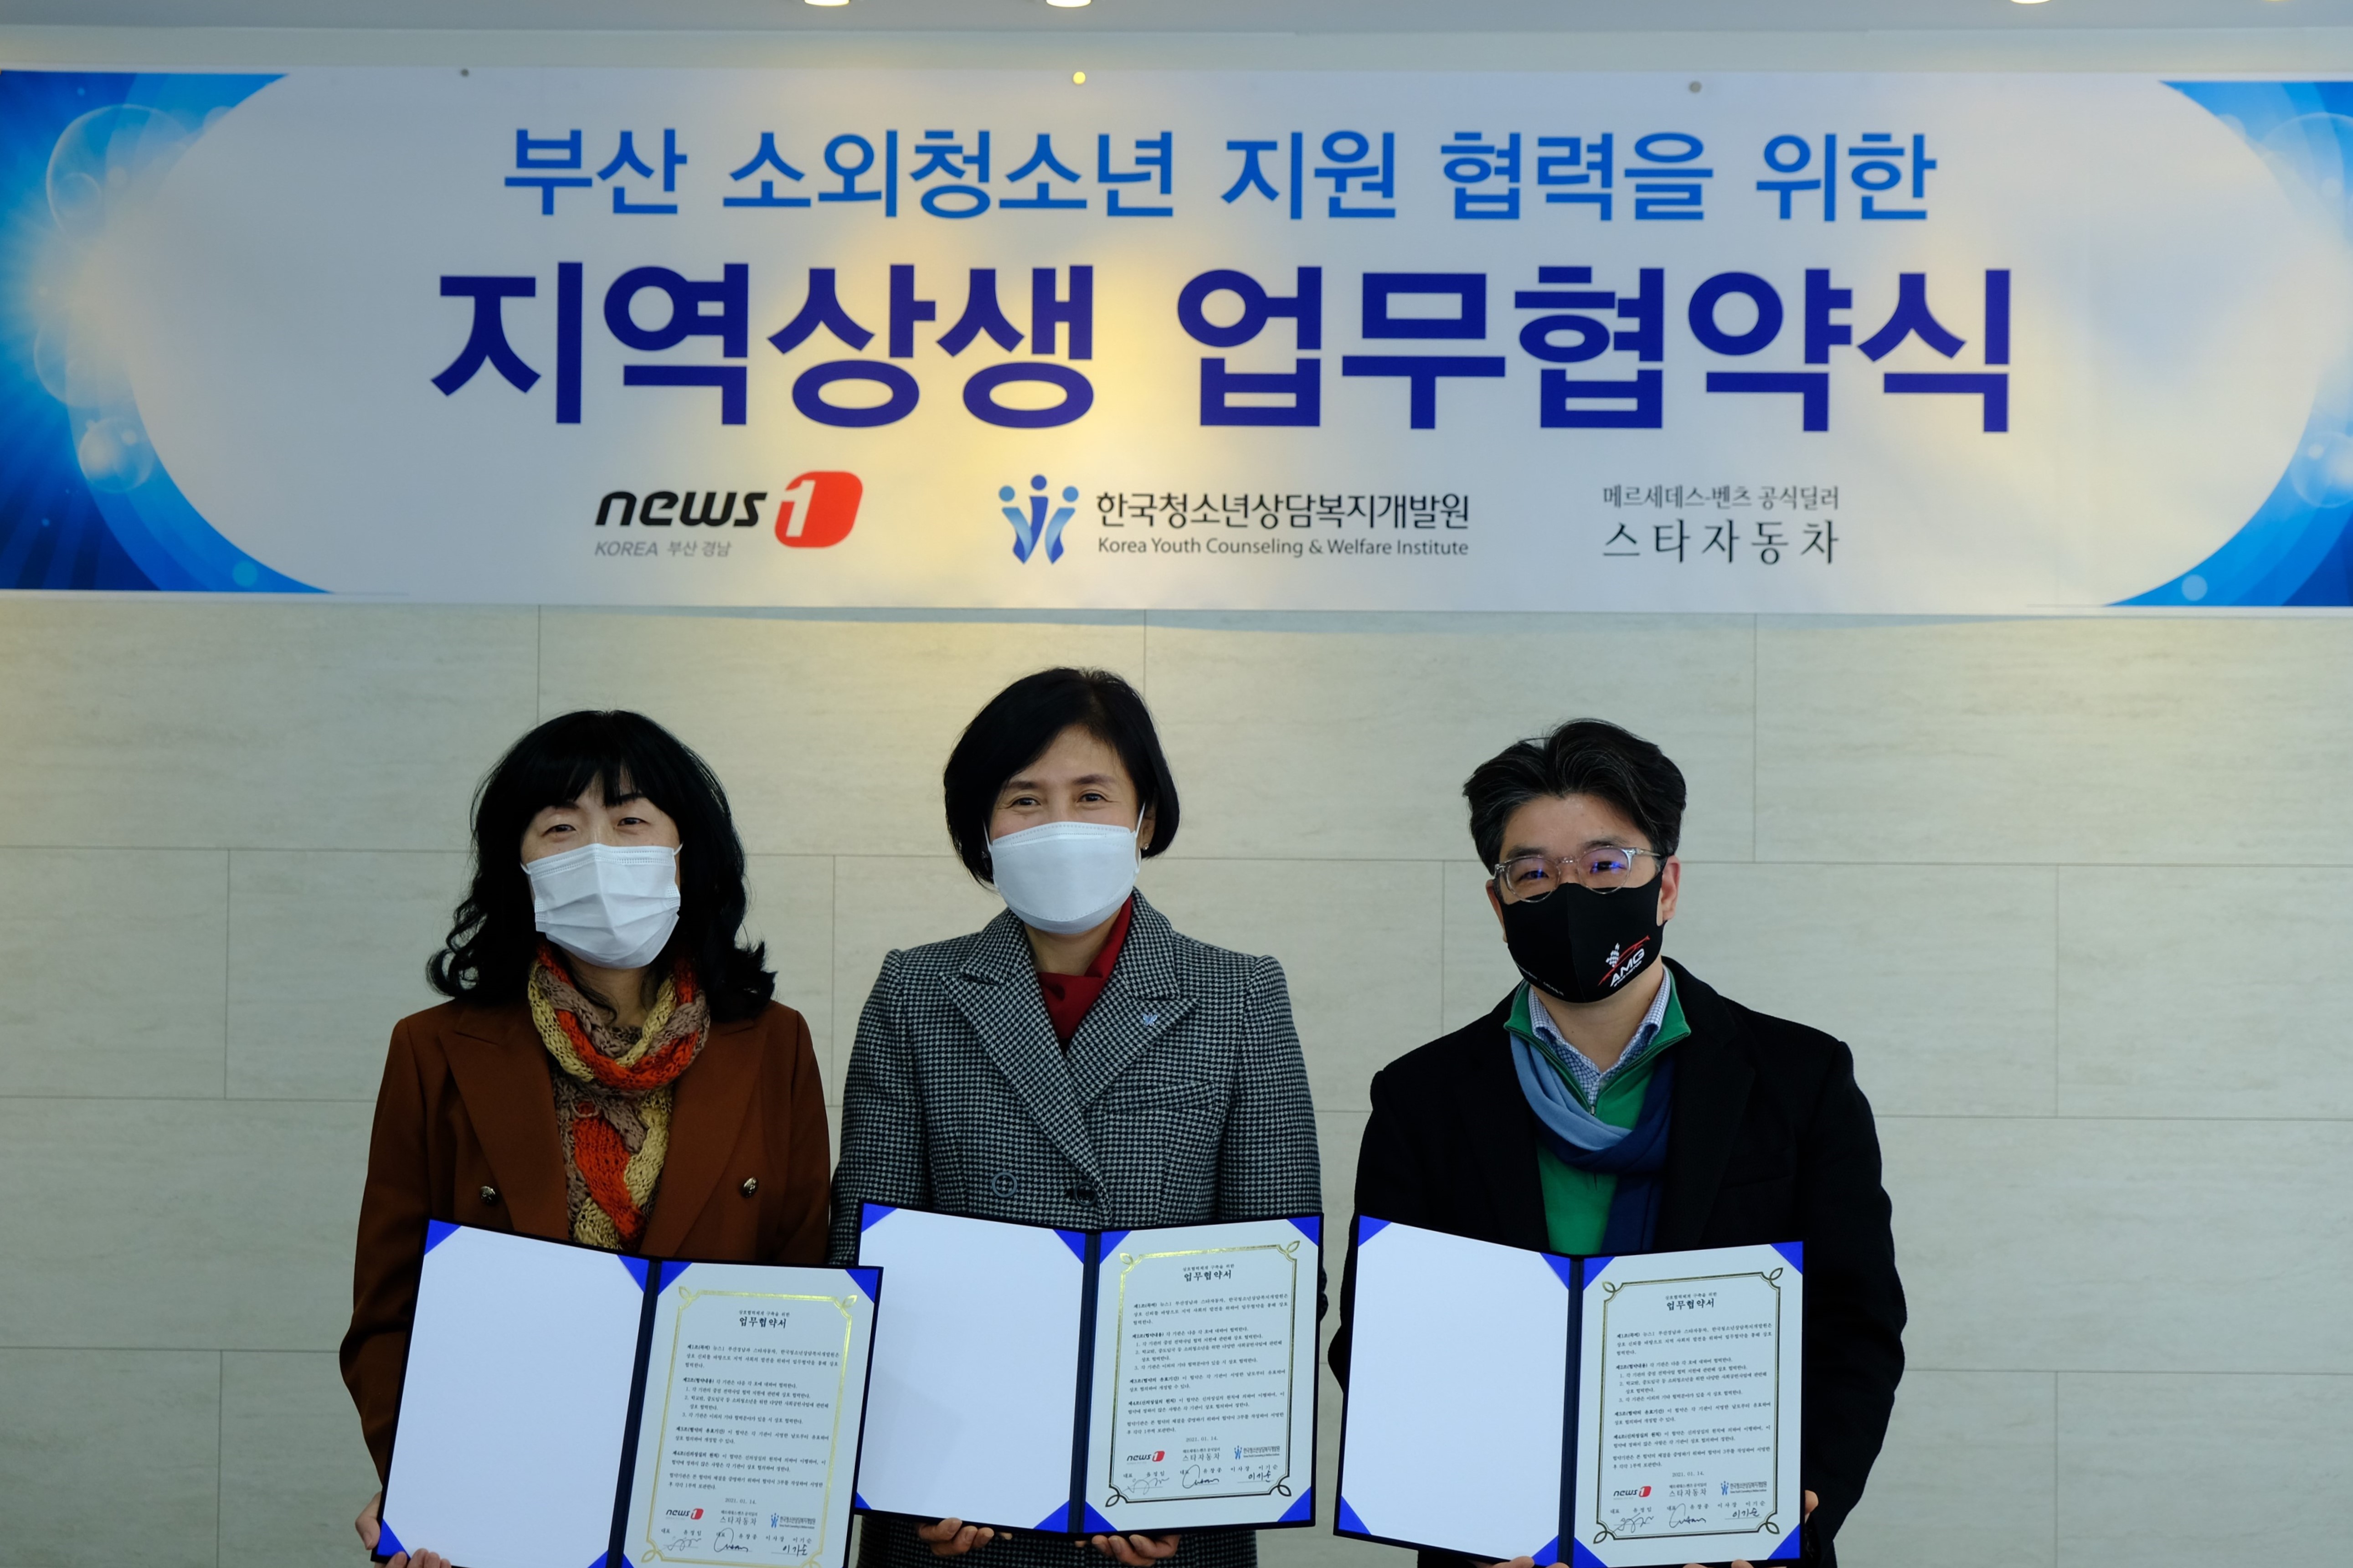 [보도자료] 한국청소년상담복지개발원 MOU 체결.hwp 하단내용참조